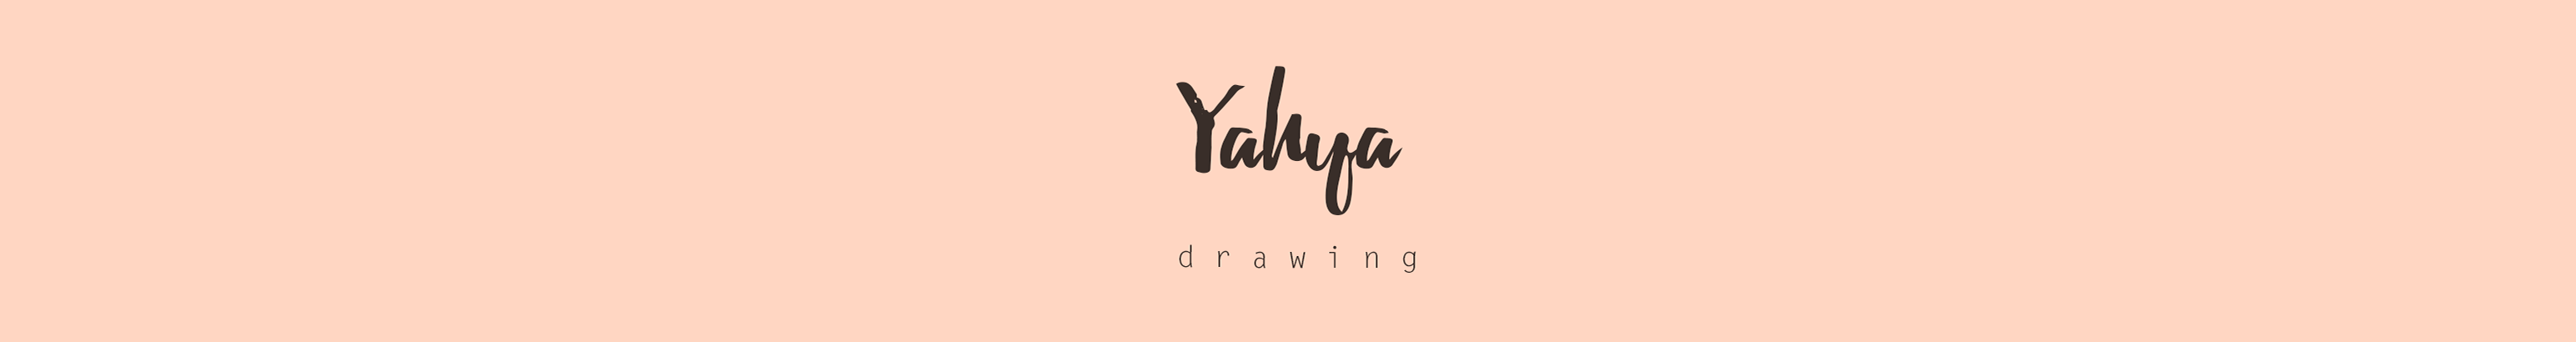 Yahya bahaa's profile banner